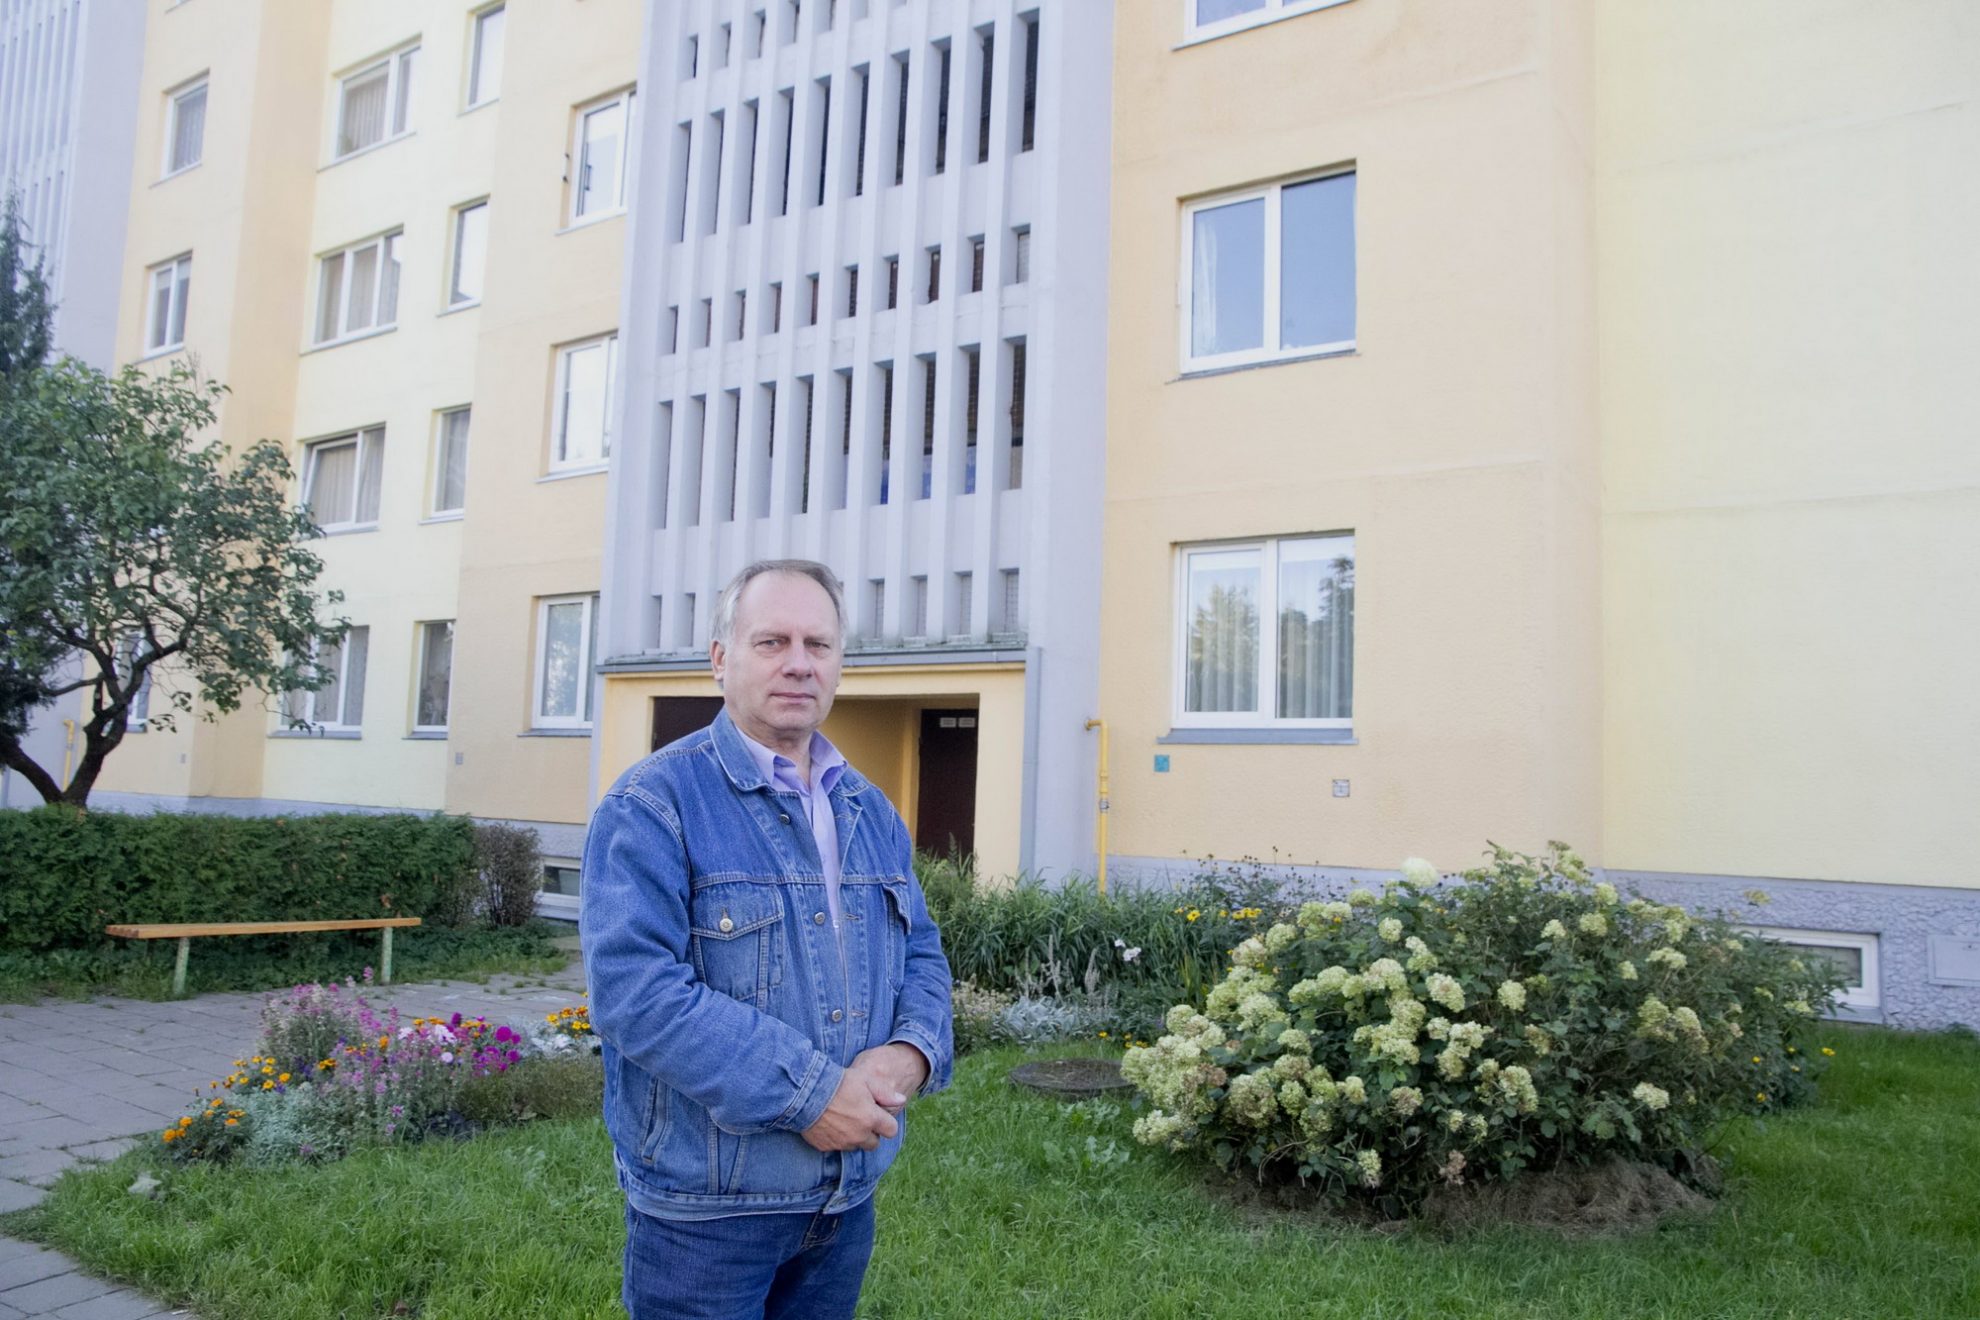 Ateities gatvės 28-ojo namo pirmininkas Kazimieras Grybė piktinasi, kad nors elektros vagys buvo sučiupti už pakarpos, teisėsauga vis delsia imtis ryžtingų veiksmų. V. BULAIČIO nuotr.